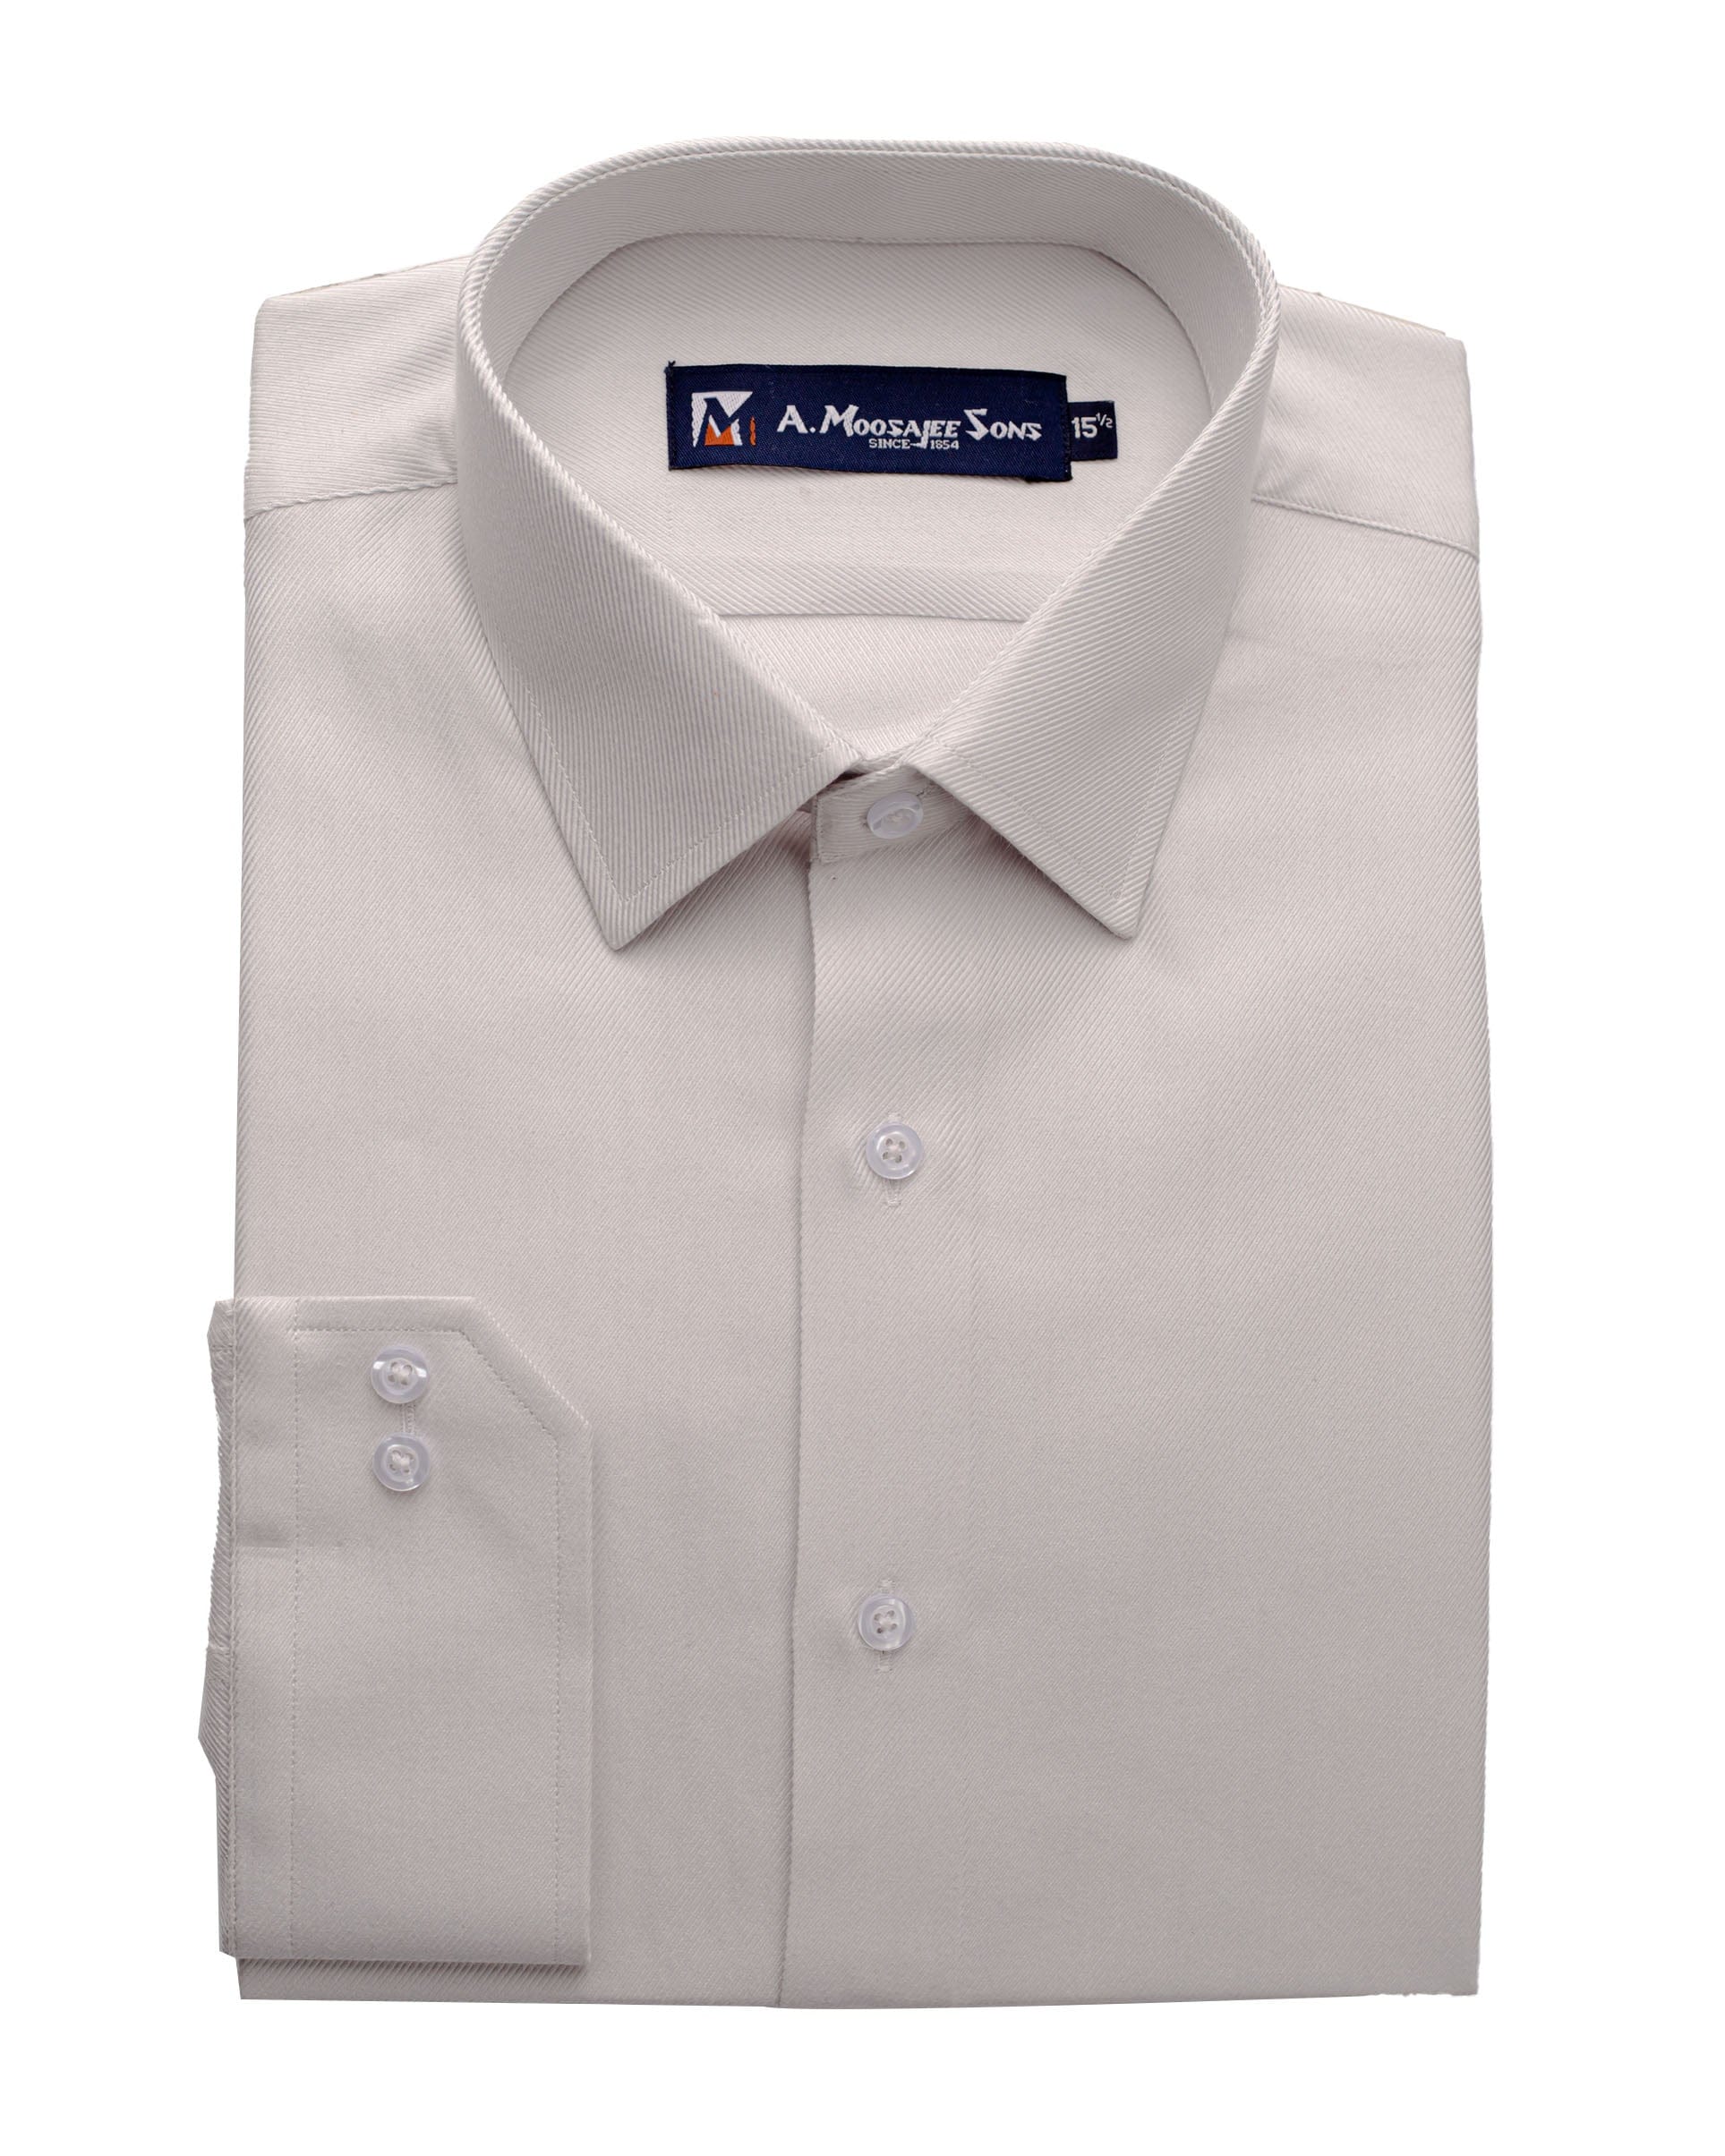 Plain Ash White Shirt